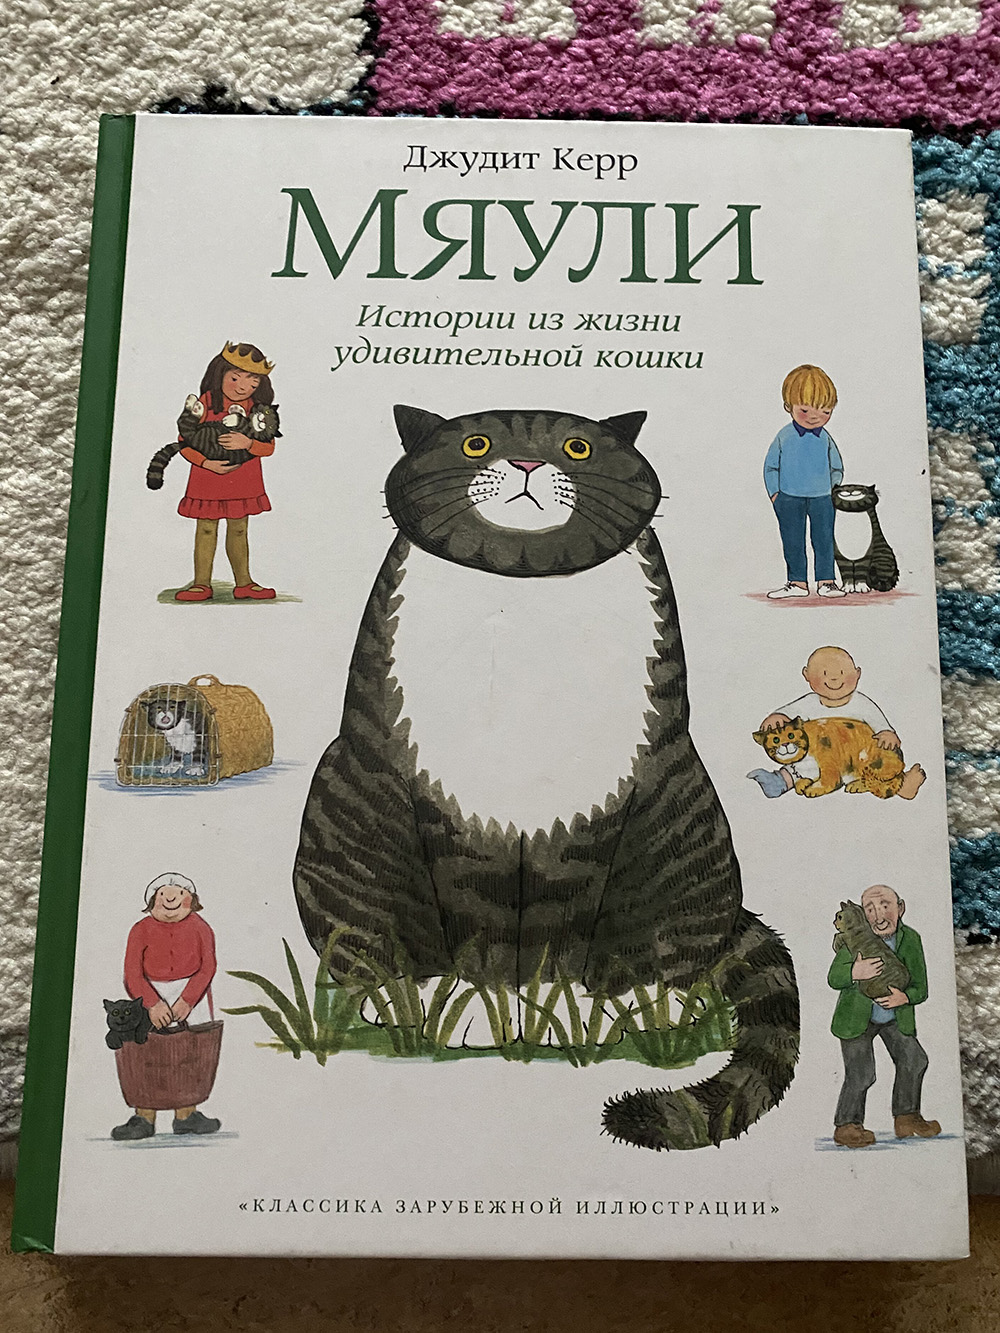 Книжка про Мяули мне нравится, хоть мне и не близки методы воспитания кошки